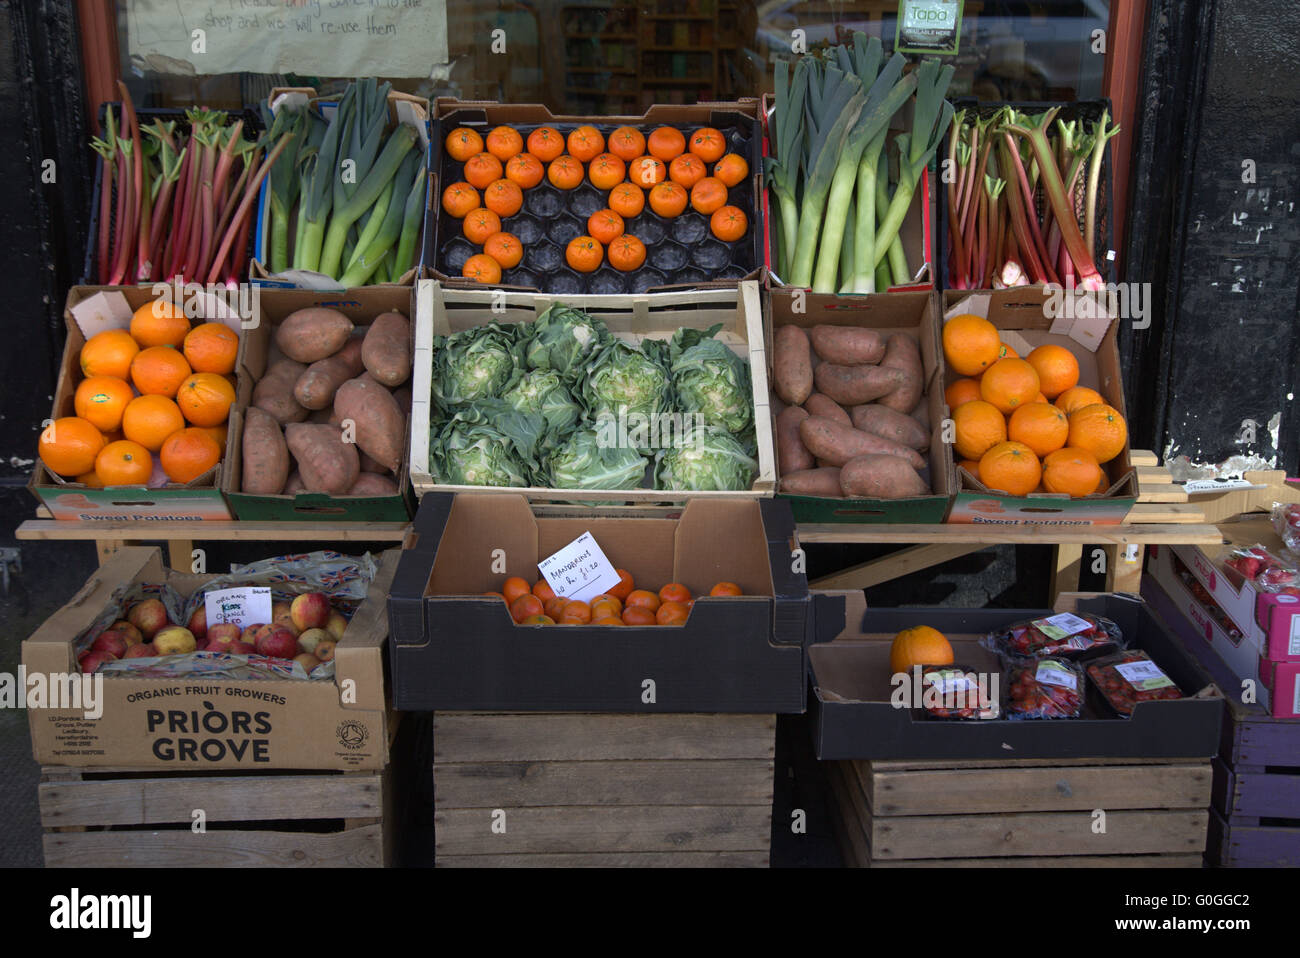 Obst und Gemüse verpackt und präsentiert Shop-front-Stil Stockfoto